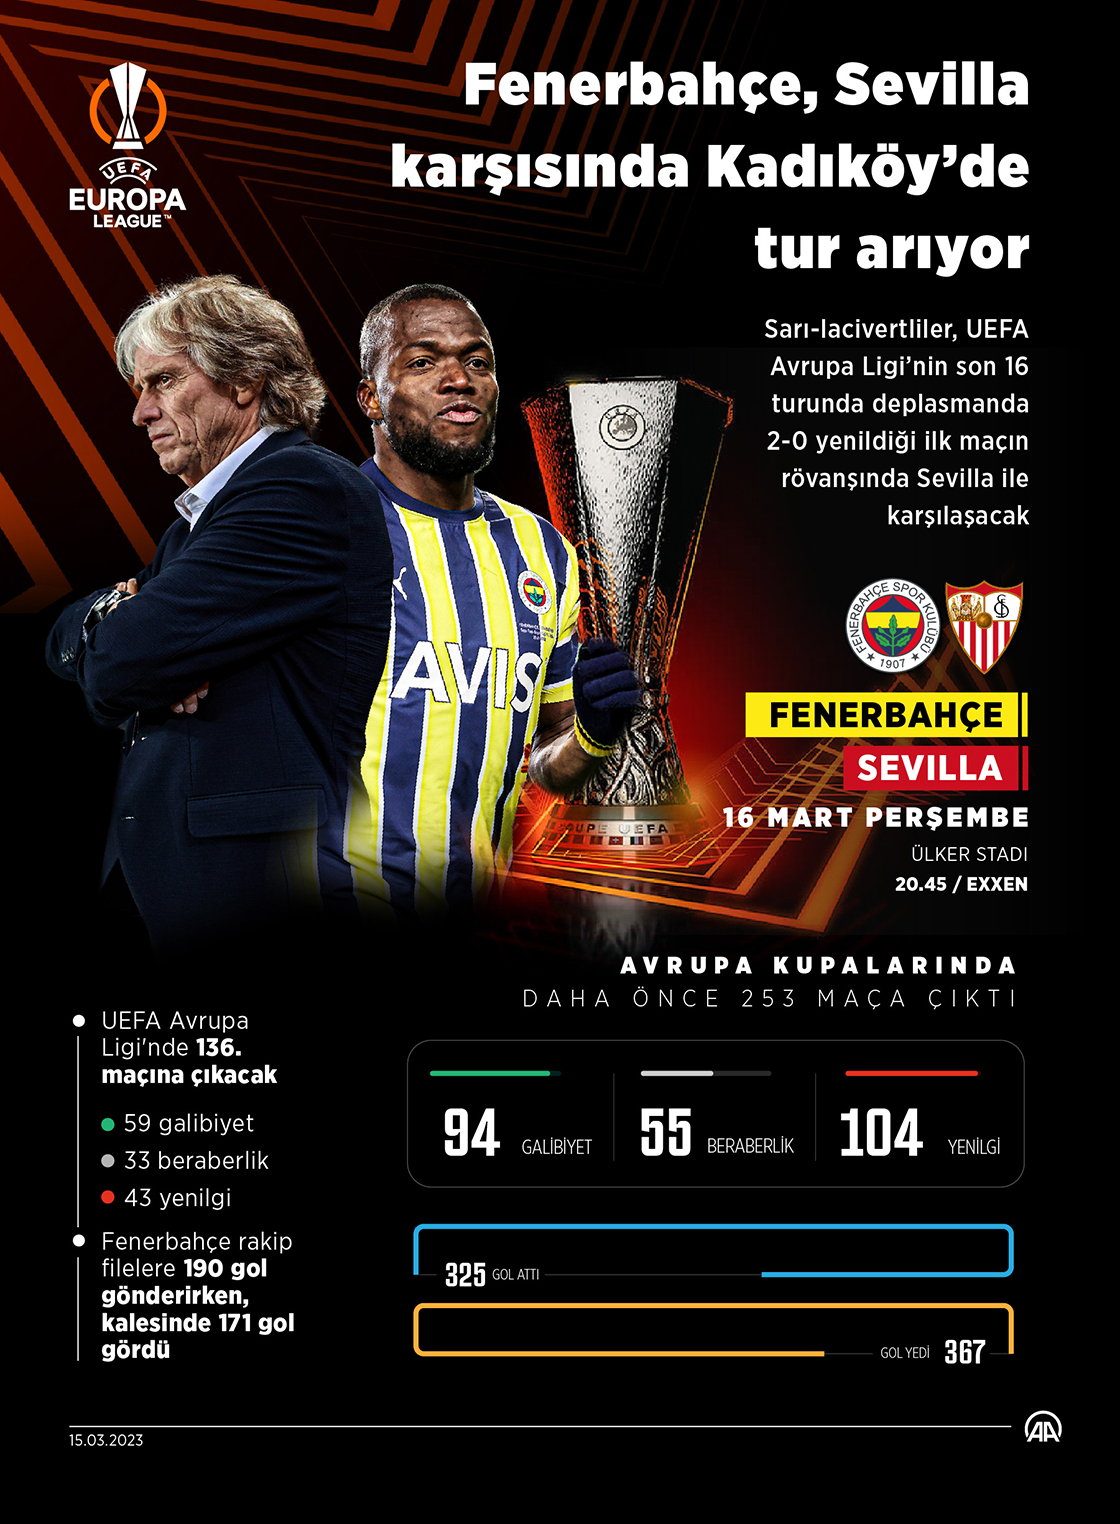 Fenerbahçe, Sevilla karşısında Kadıköy’de tur arıyor